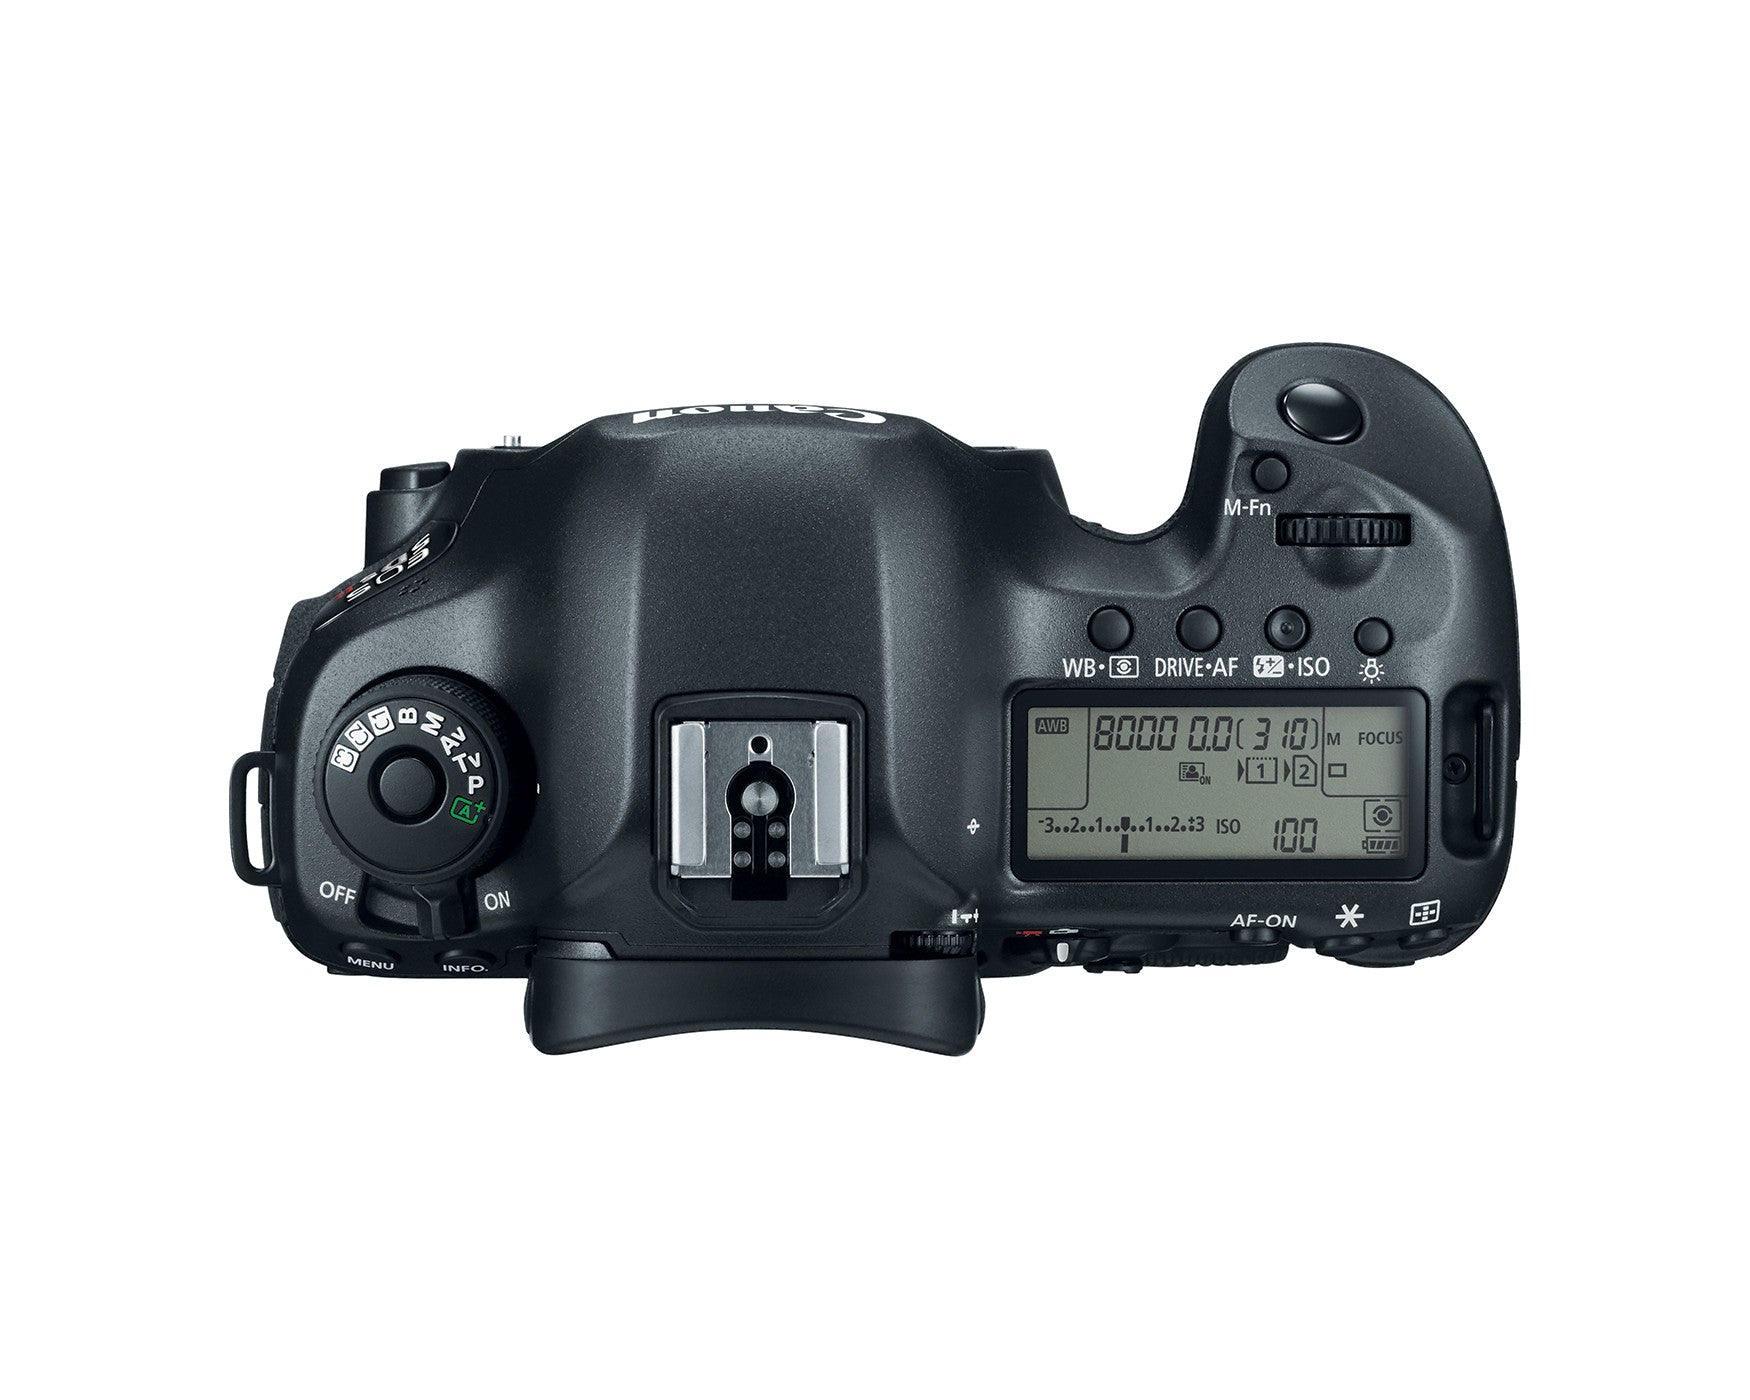 Canon EOS 5DS R Digital Camera Body, camera dslr cameras, Canon - Pictureline  - 3